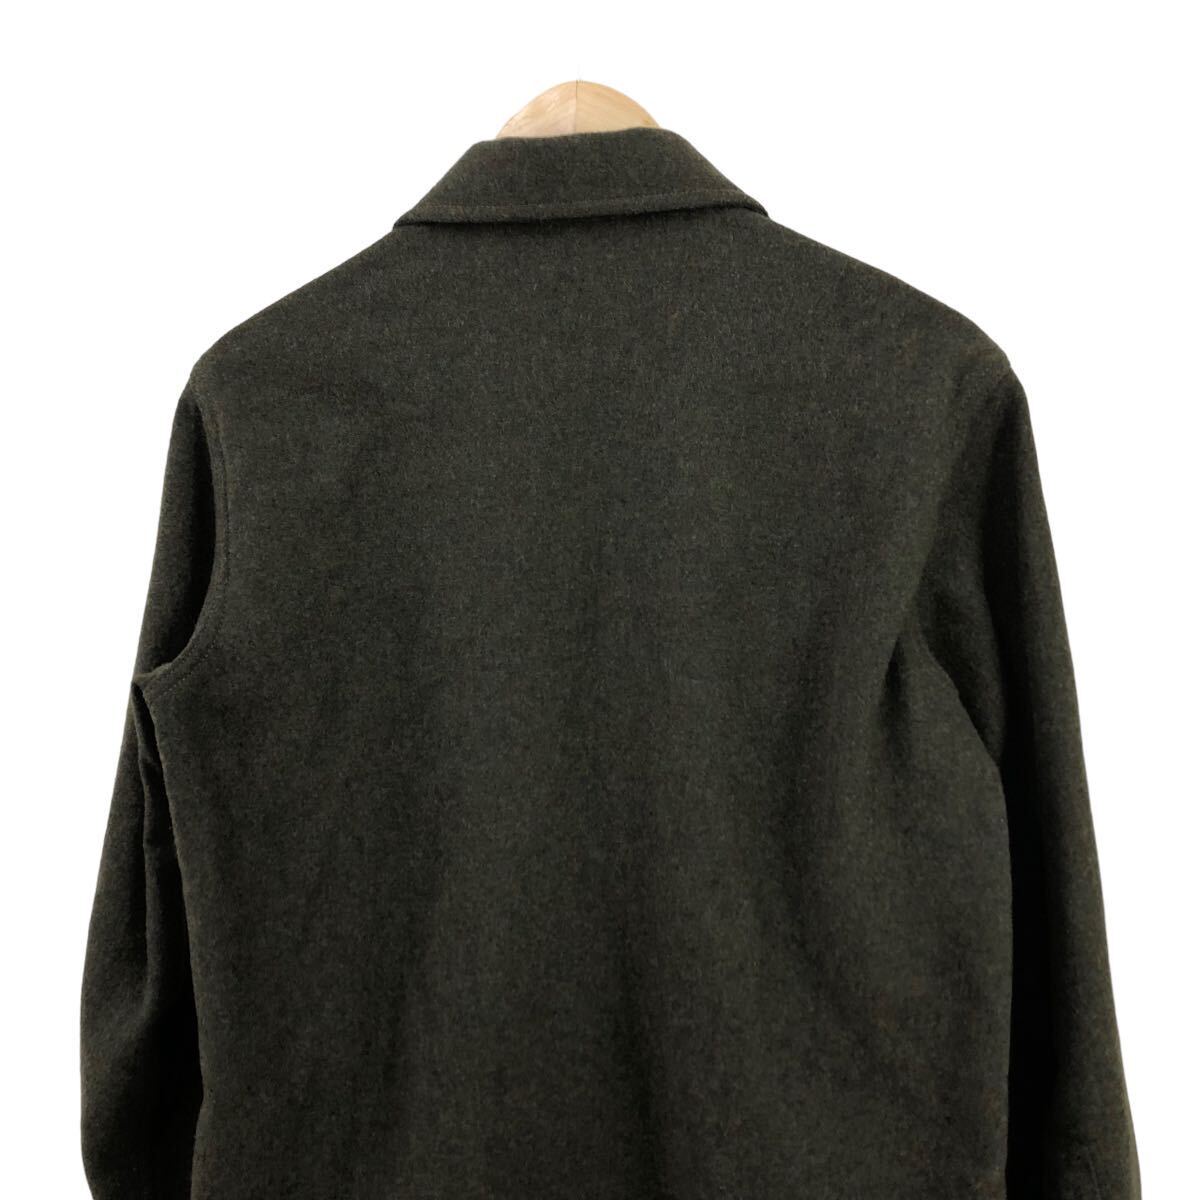 H717⑦ ほぼ美品 日本製 KAVU カブー 長袖 ウール ジャケット シャツジャケット 上着 カーキ系 カシミヤ混 メンズ SMALL_画像6